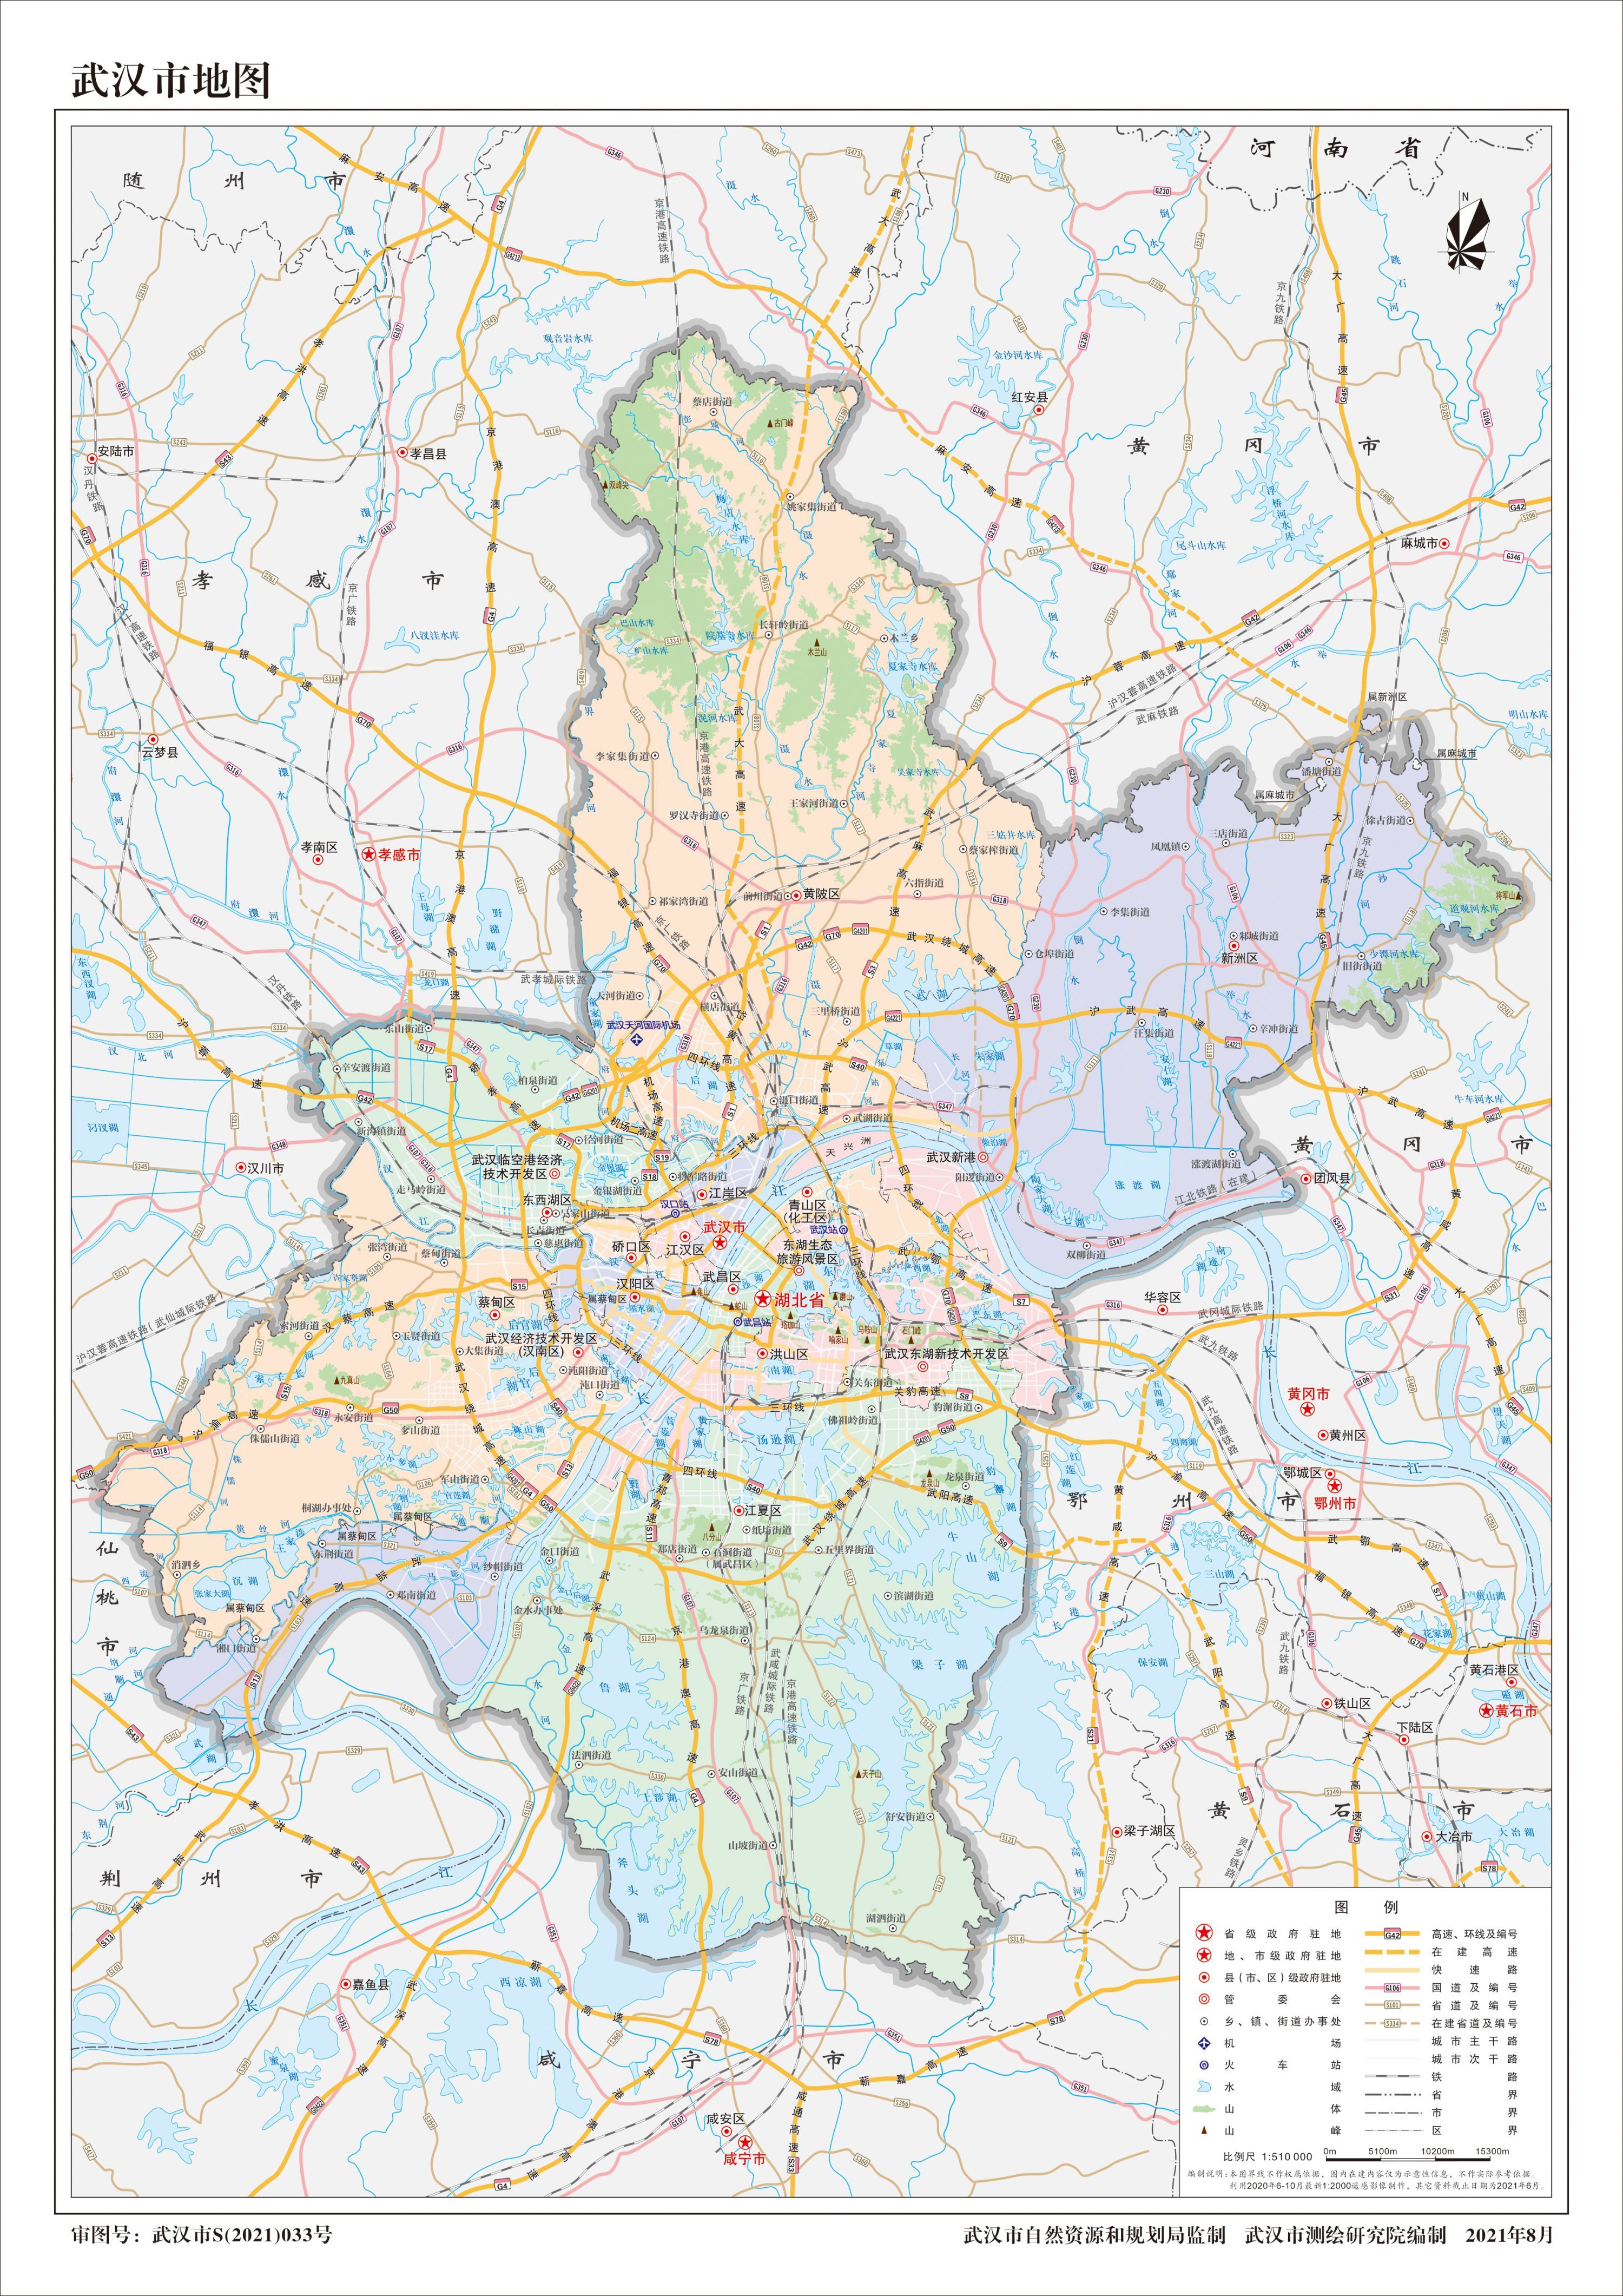 收藏!最新版武汉市地图发布